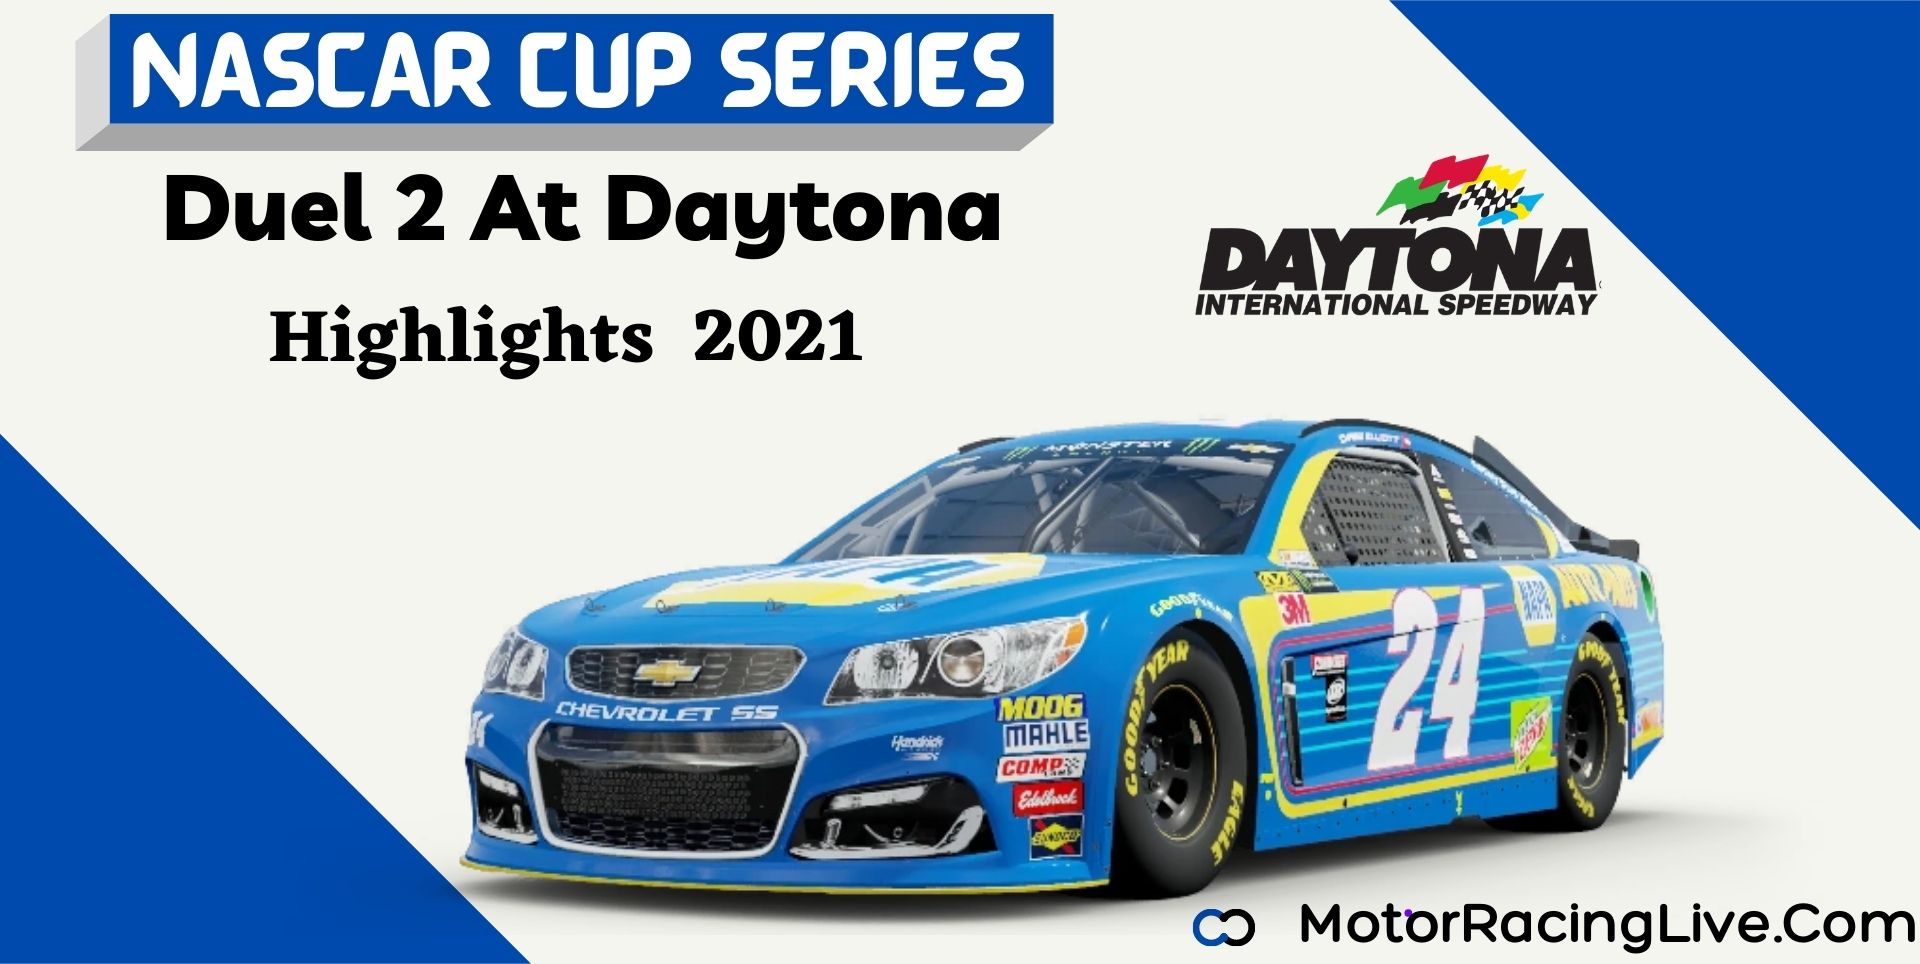 Duel 2 At Daytona Highlights 2021 NASCAR Cup Series